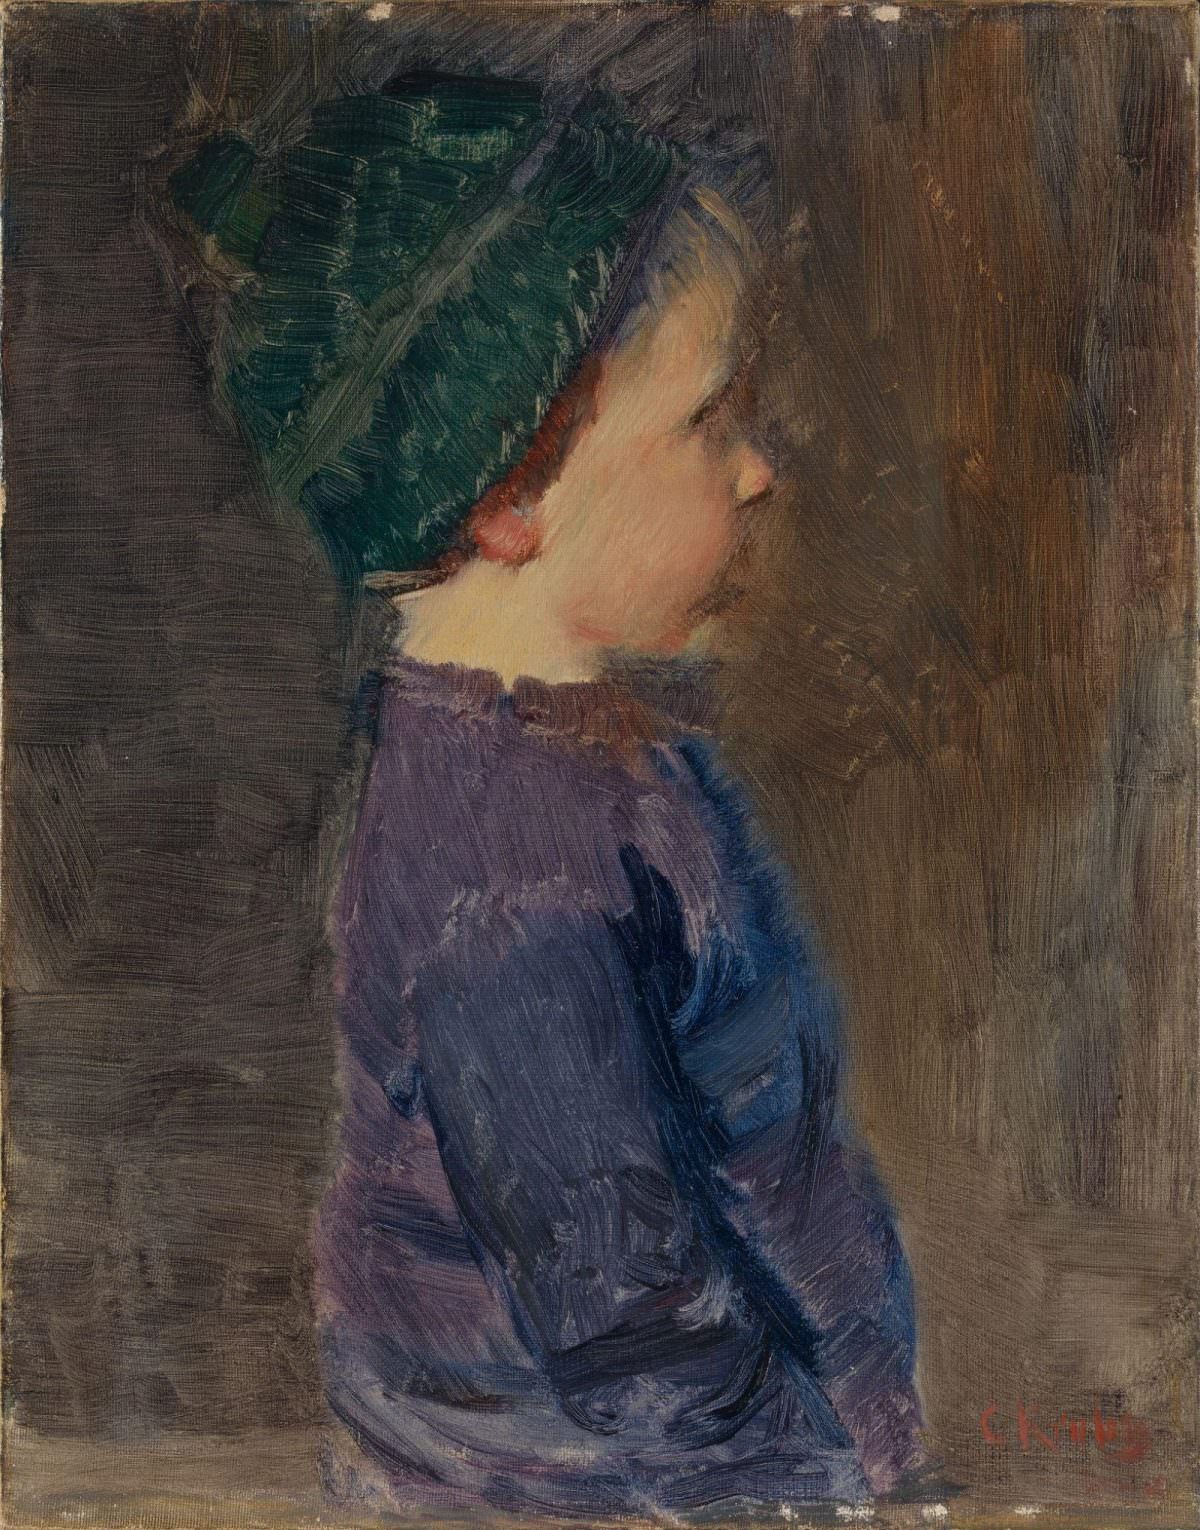 A Little Boy, 1890.